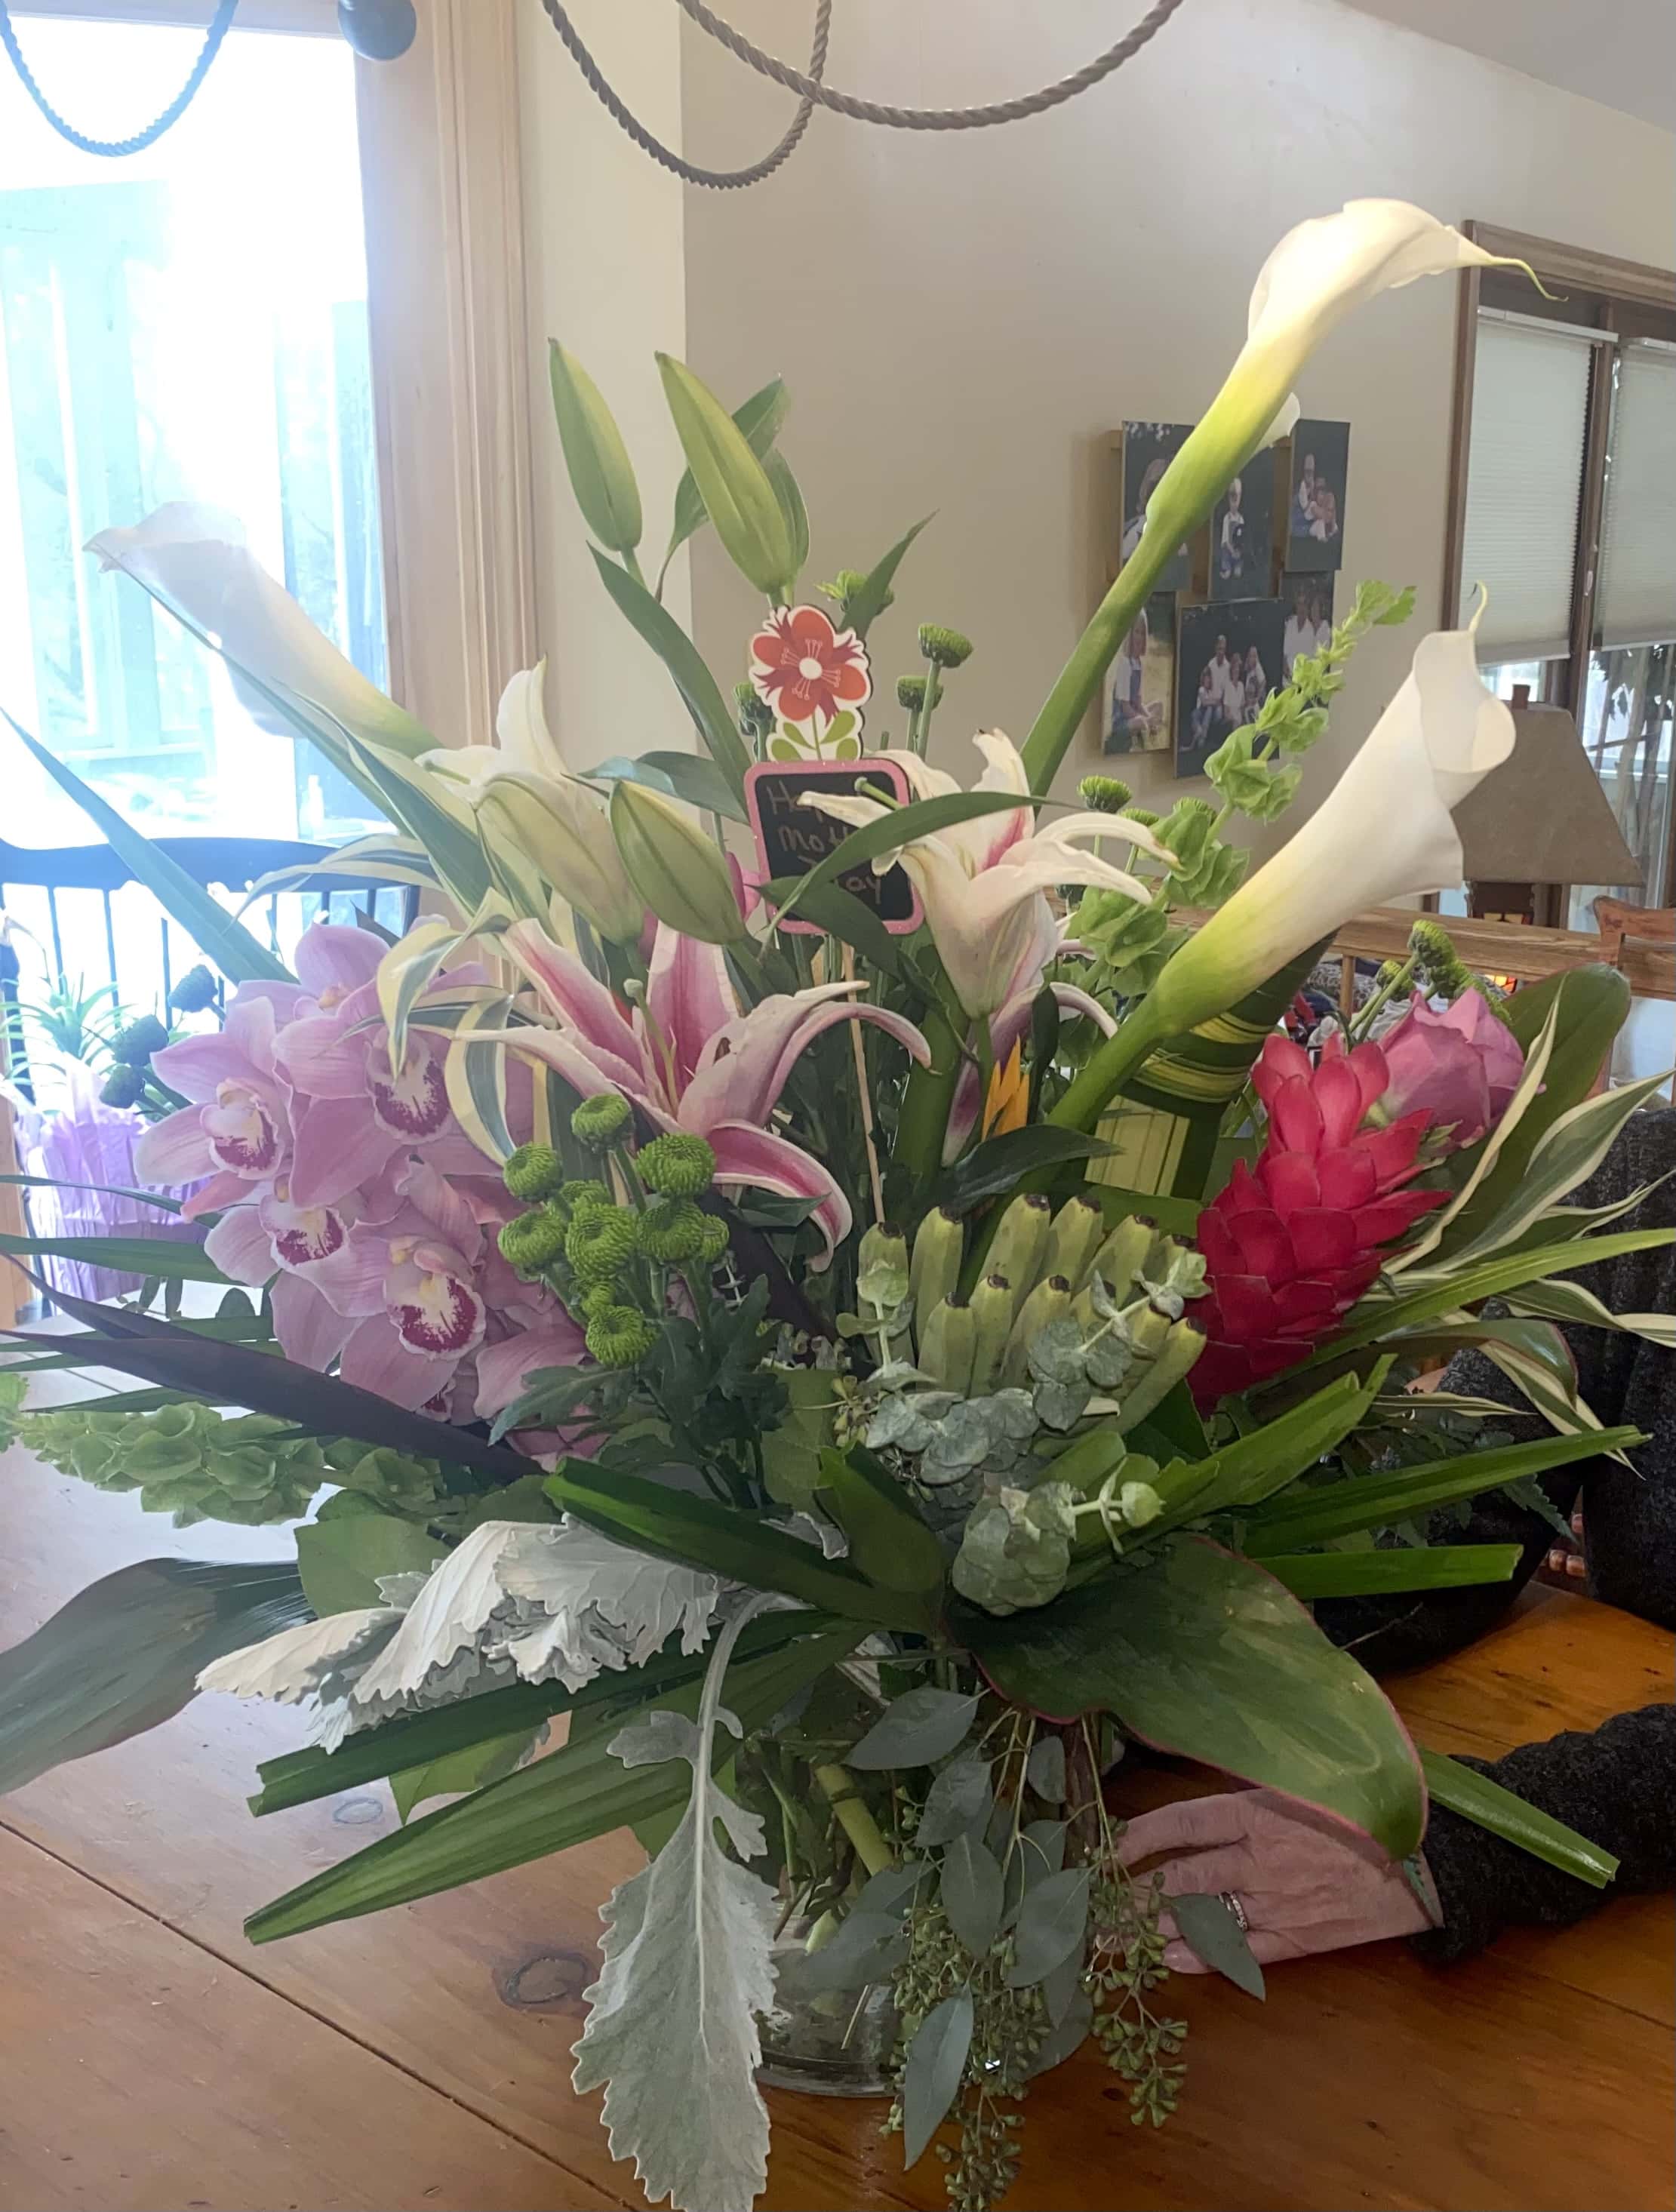 Dixieland Florist & Gift Shop - Bedford, NH, US, wholesale flowers online